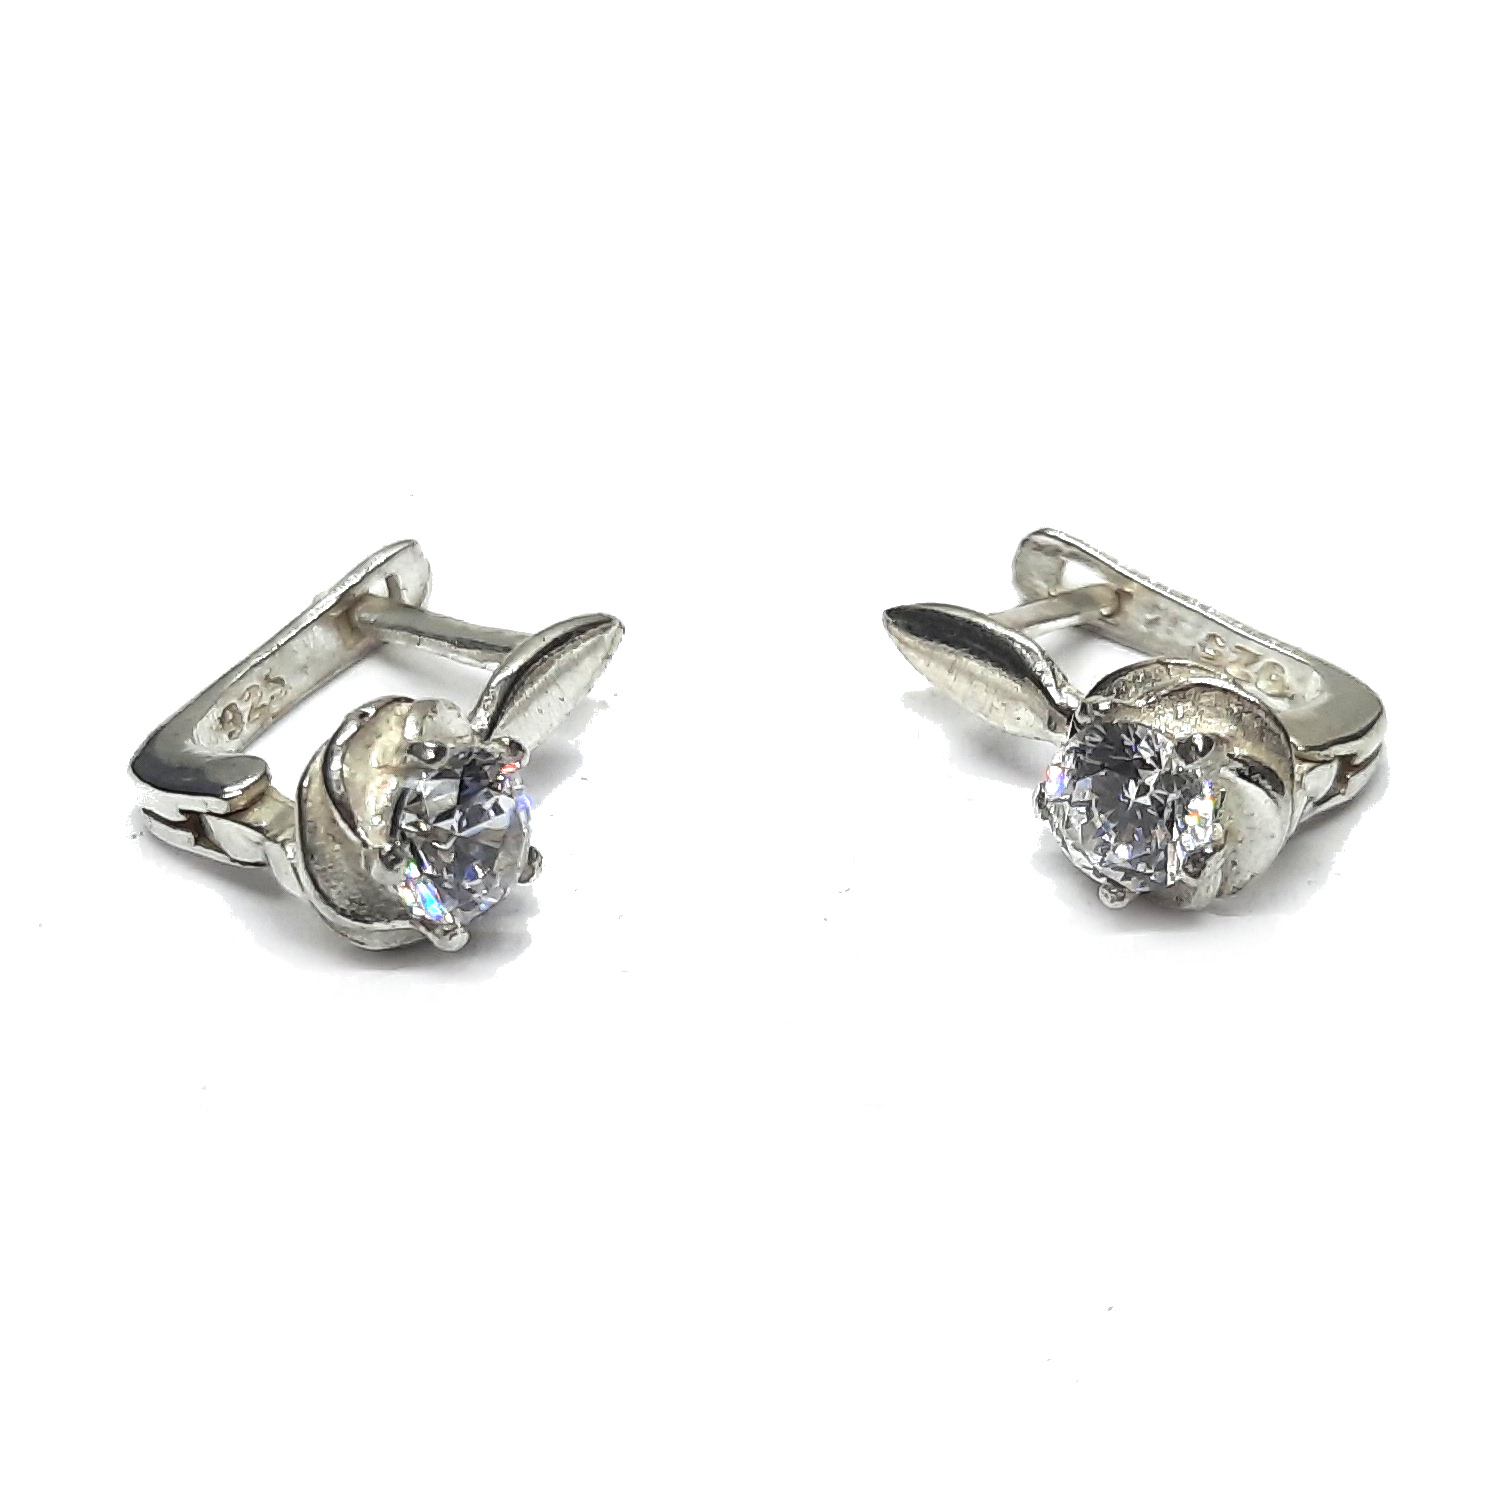 Silver earrings - E000899